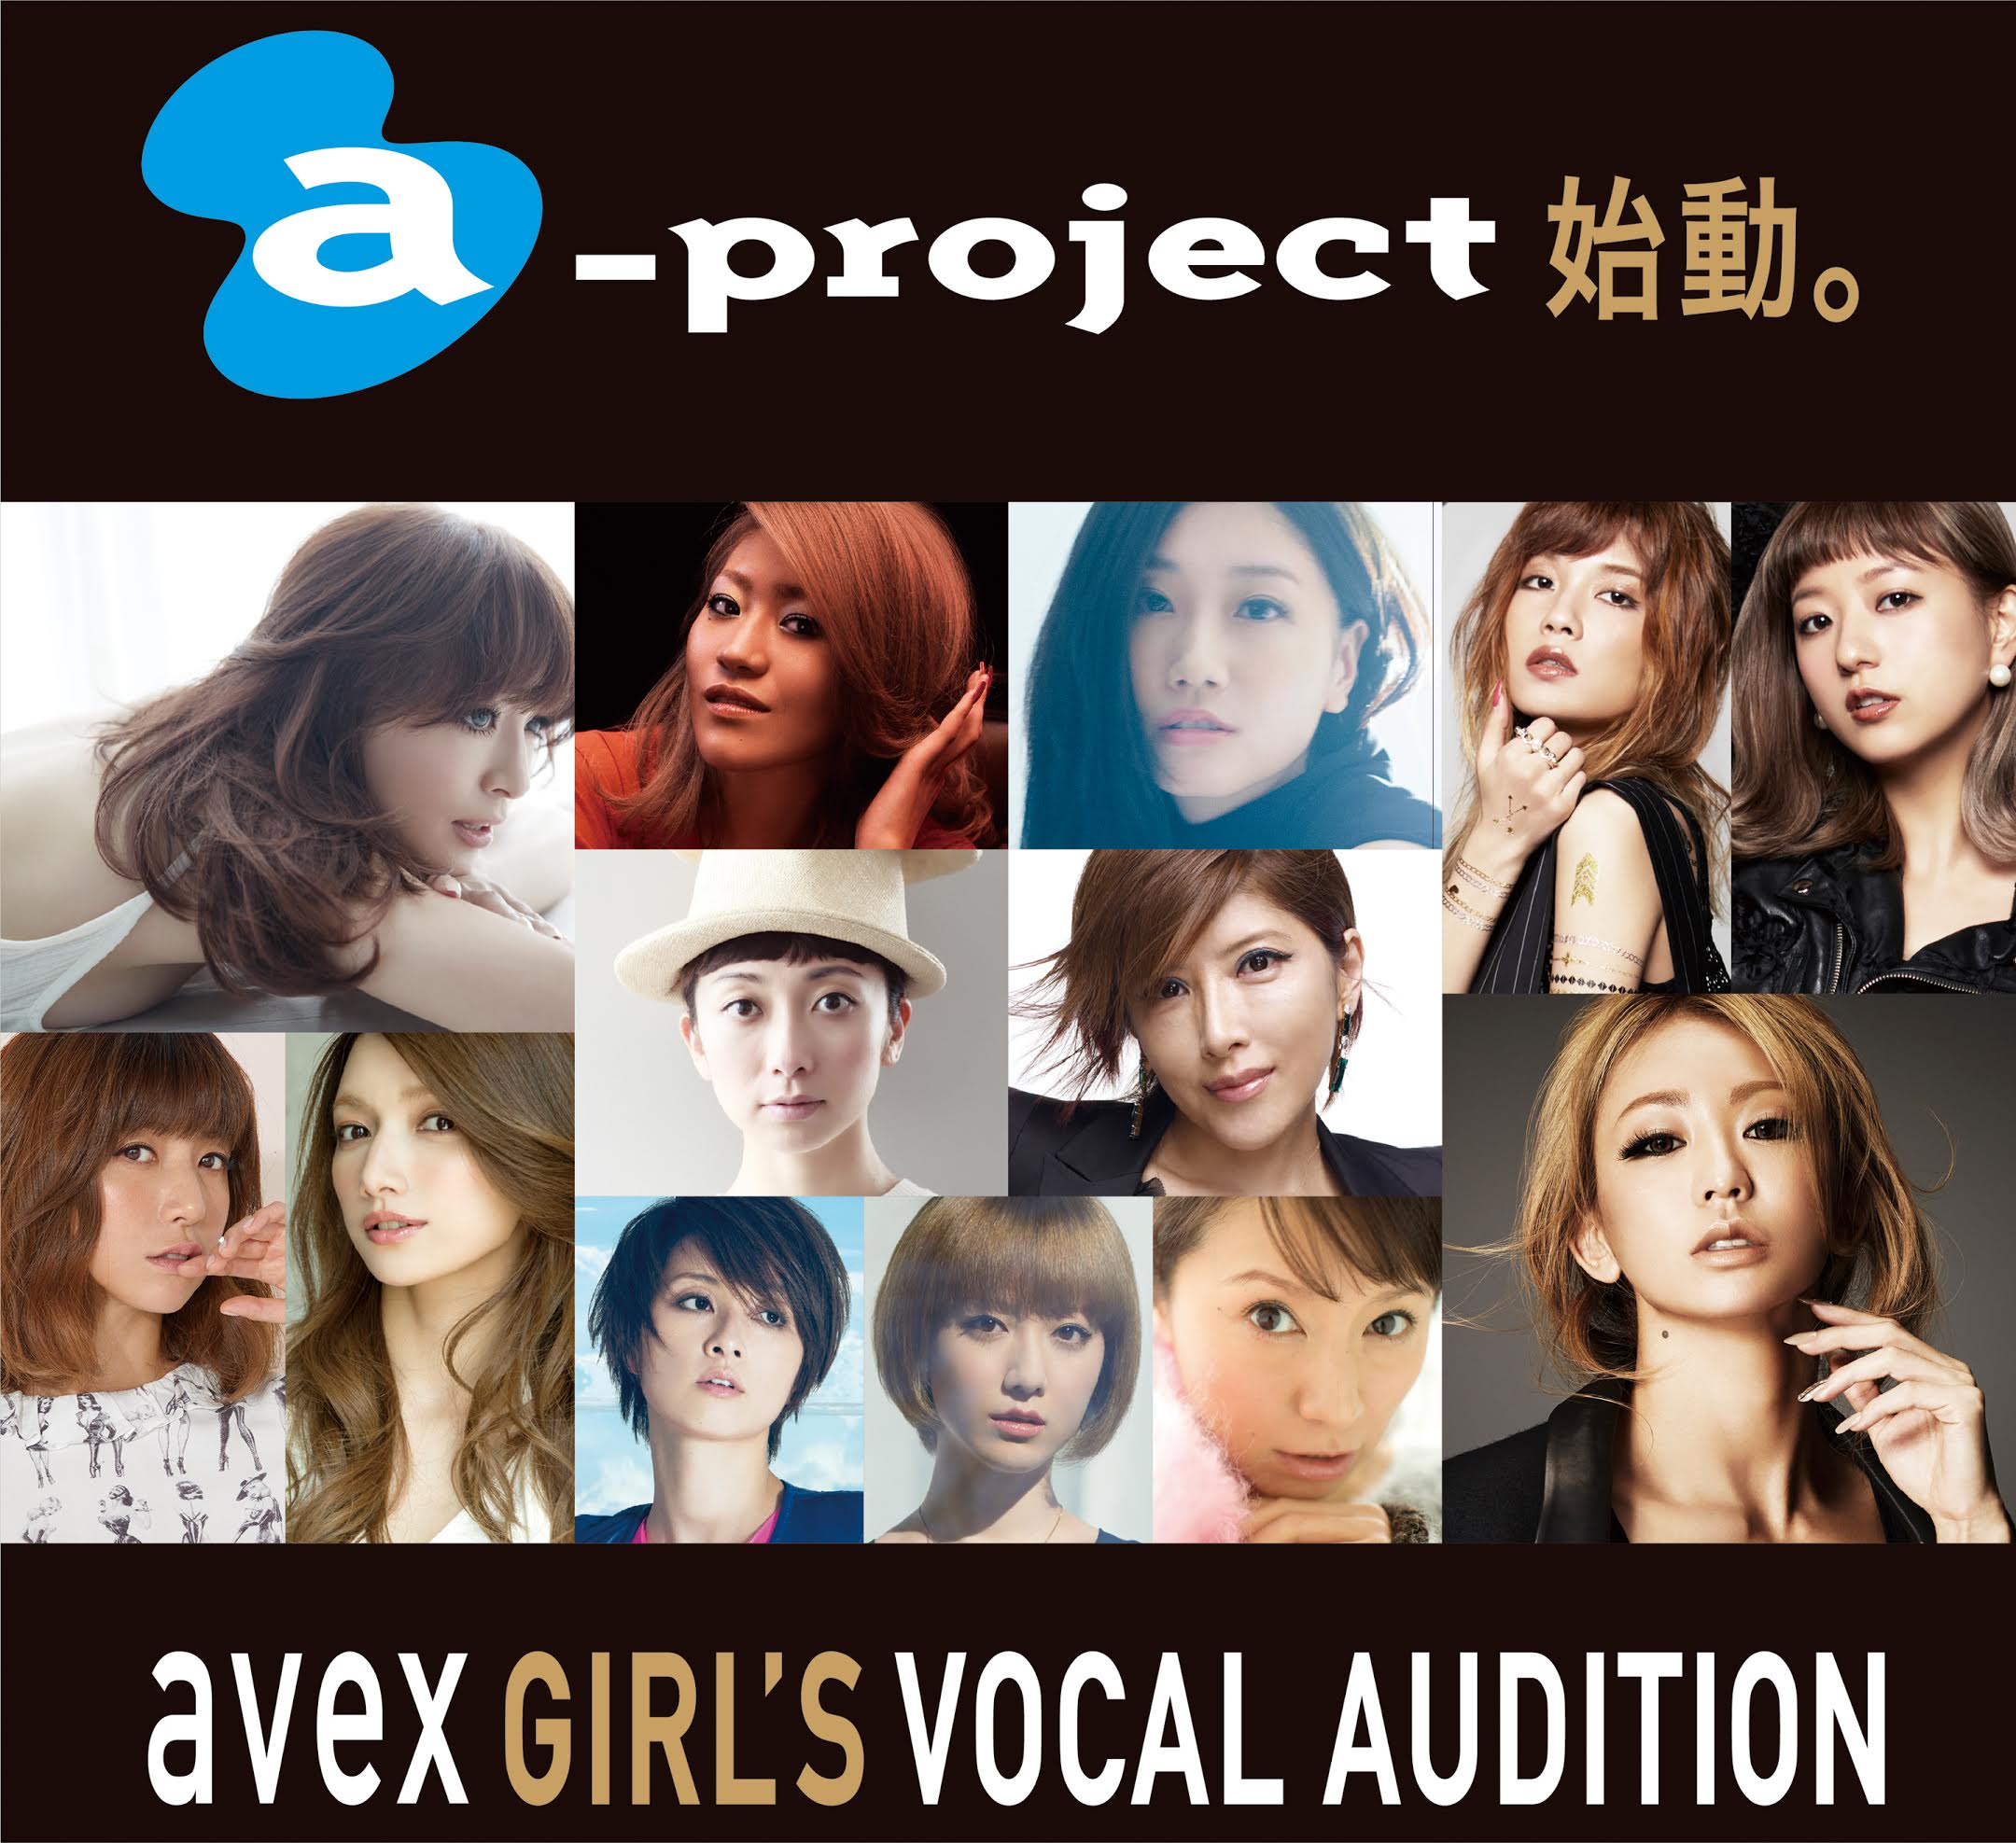 Avex史上初 トッププロデューサーが直接審査する過去最大級の歌姫発掘オーディション Avex Girl S Vocal Audition 開催 エイベックス株式会社のプレスリリース